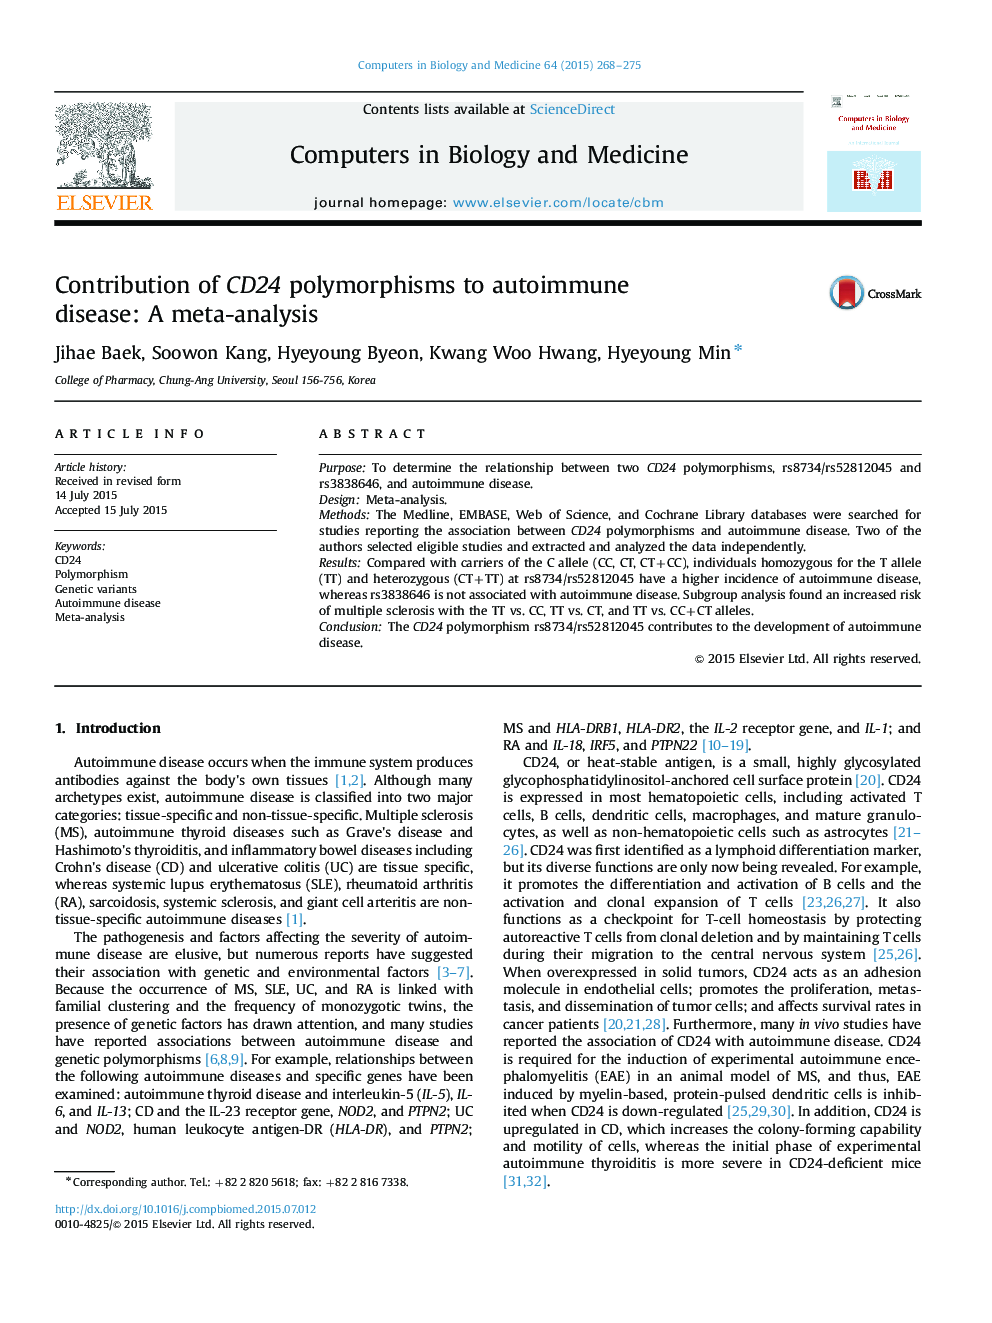 سهم پلی مورفیسم CD24 در بیماری های خودایمنی: یک متاآنالیز